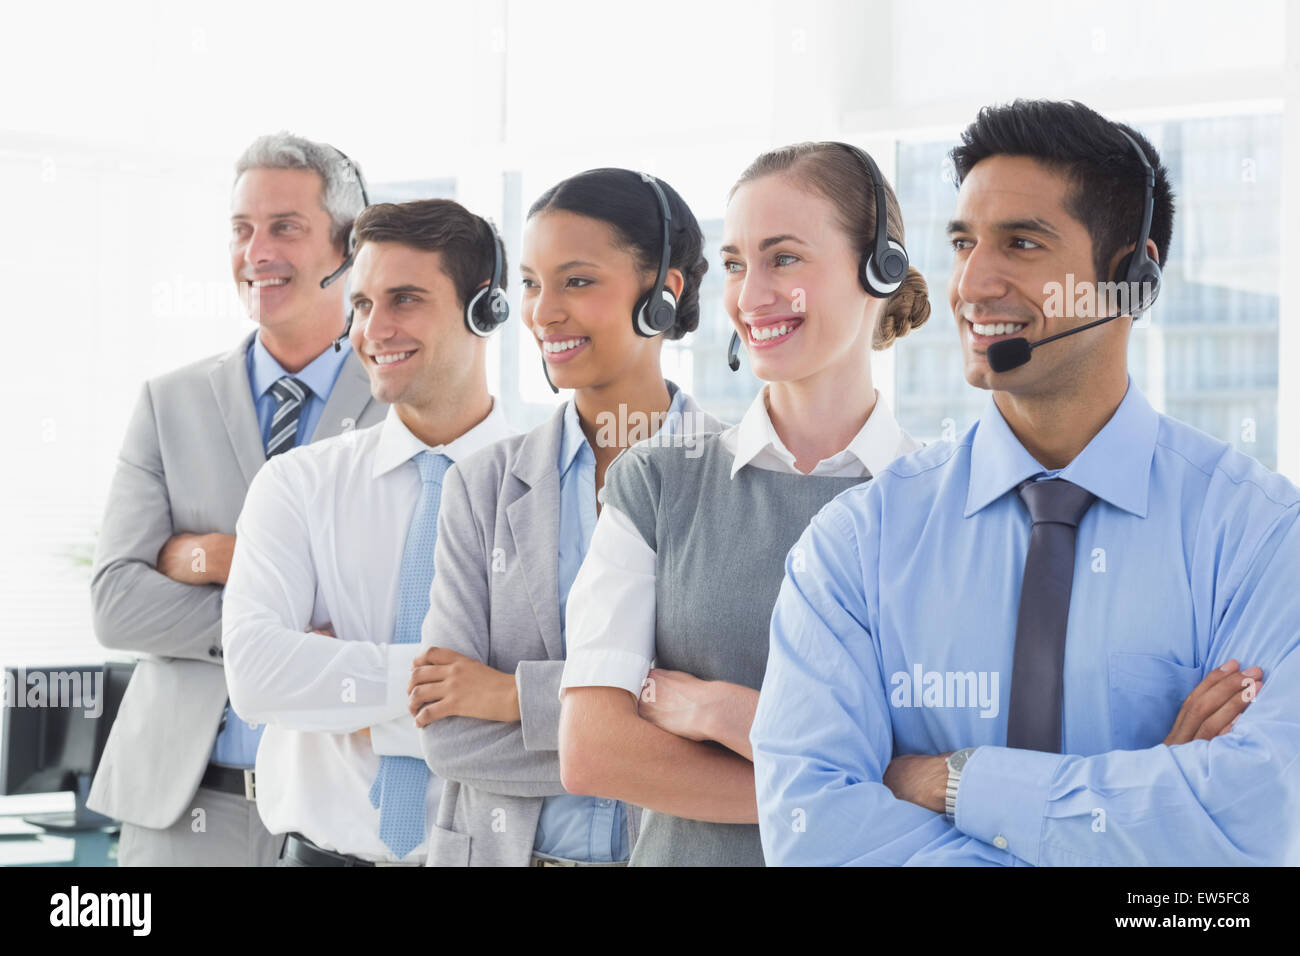 La gente de negocios con auriculares mirando a la derecha Foto de stock